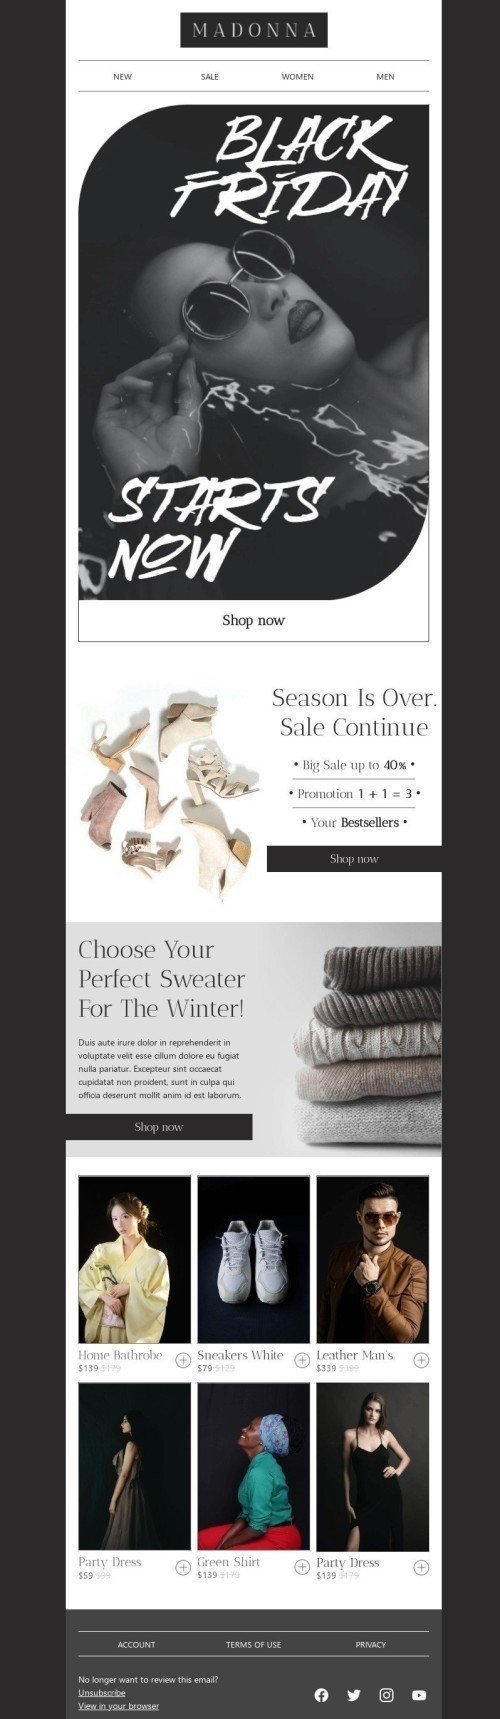 Black Friday E-Mail-Vorlage «Wählen Sie Ihren perfekten Pullover» für Mode-Branche Desktop-Ansicht